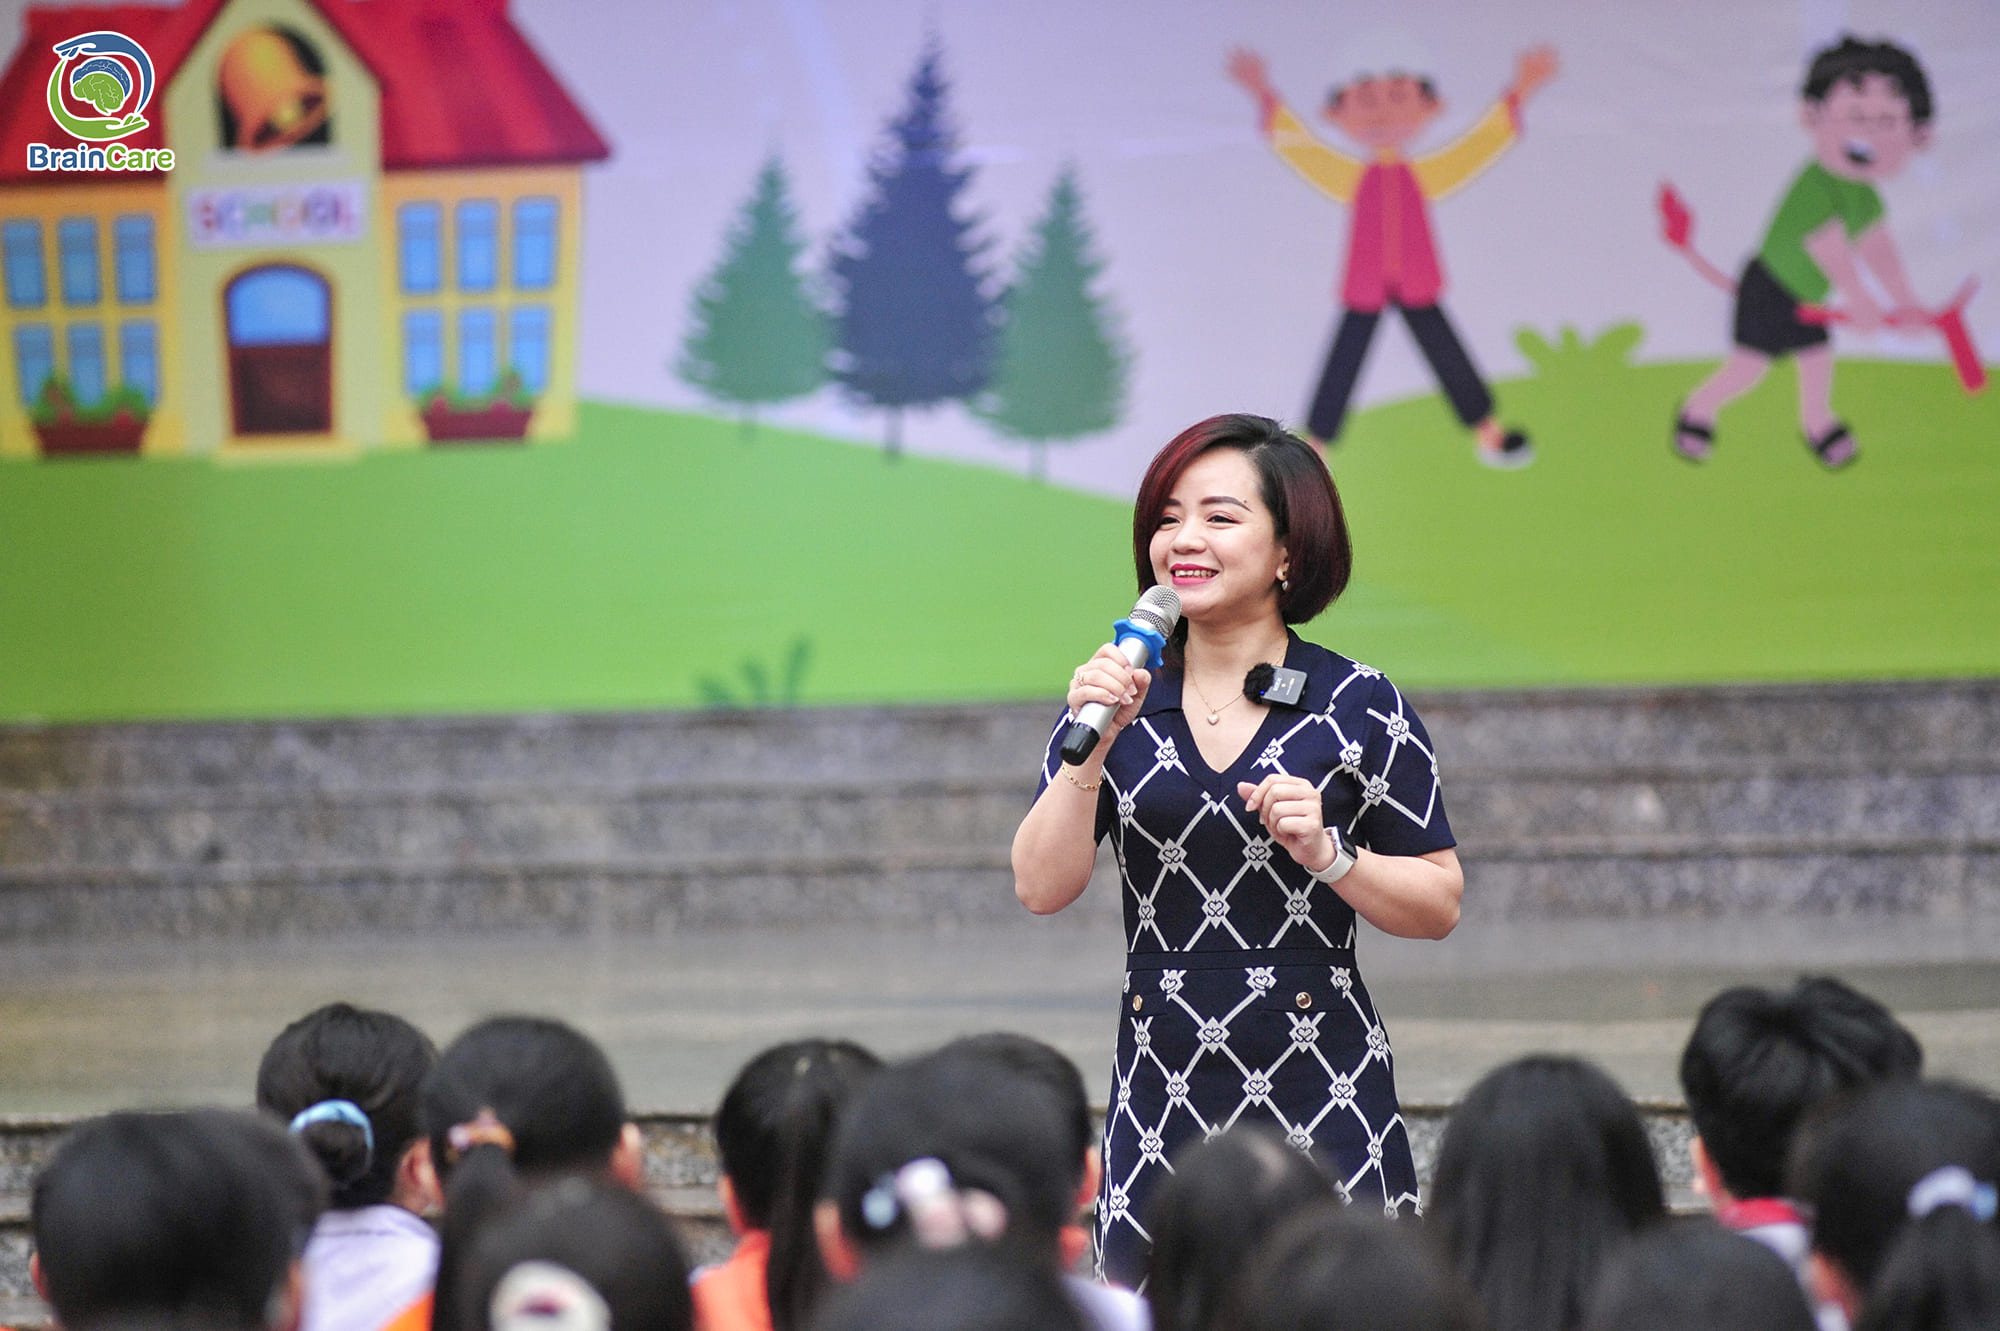 Thạc sĩ Nguyễn Hiền Minh trao đi những giá trị, giúp học sinh trường Tiểu học Nghĩa Tân làm chủ cảm xúc